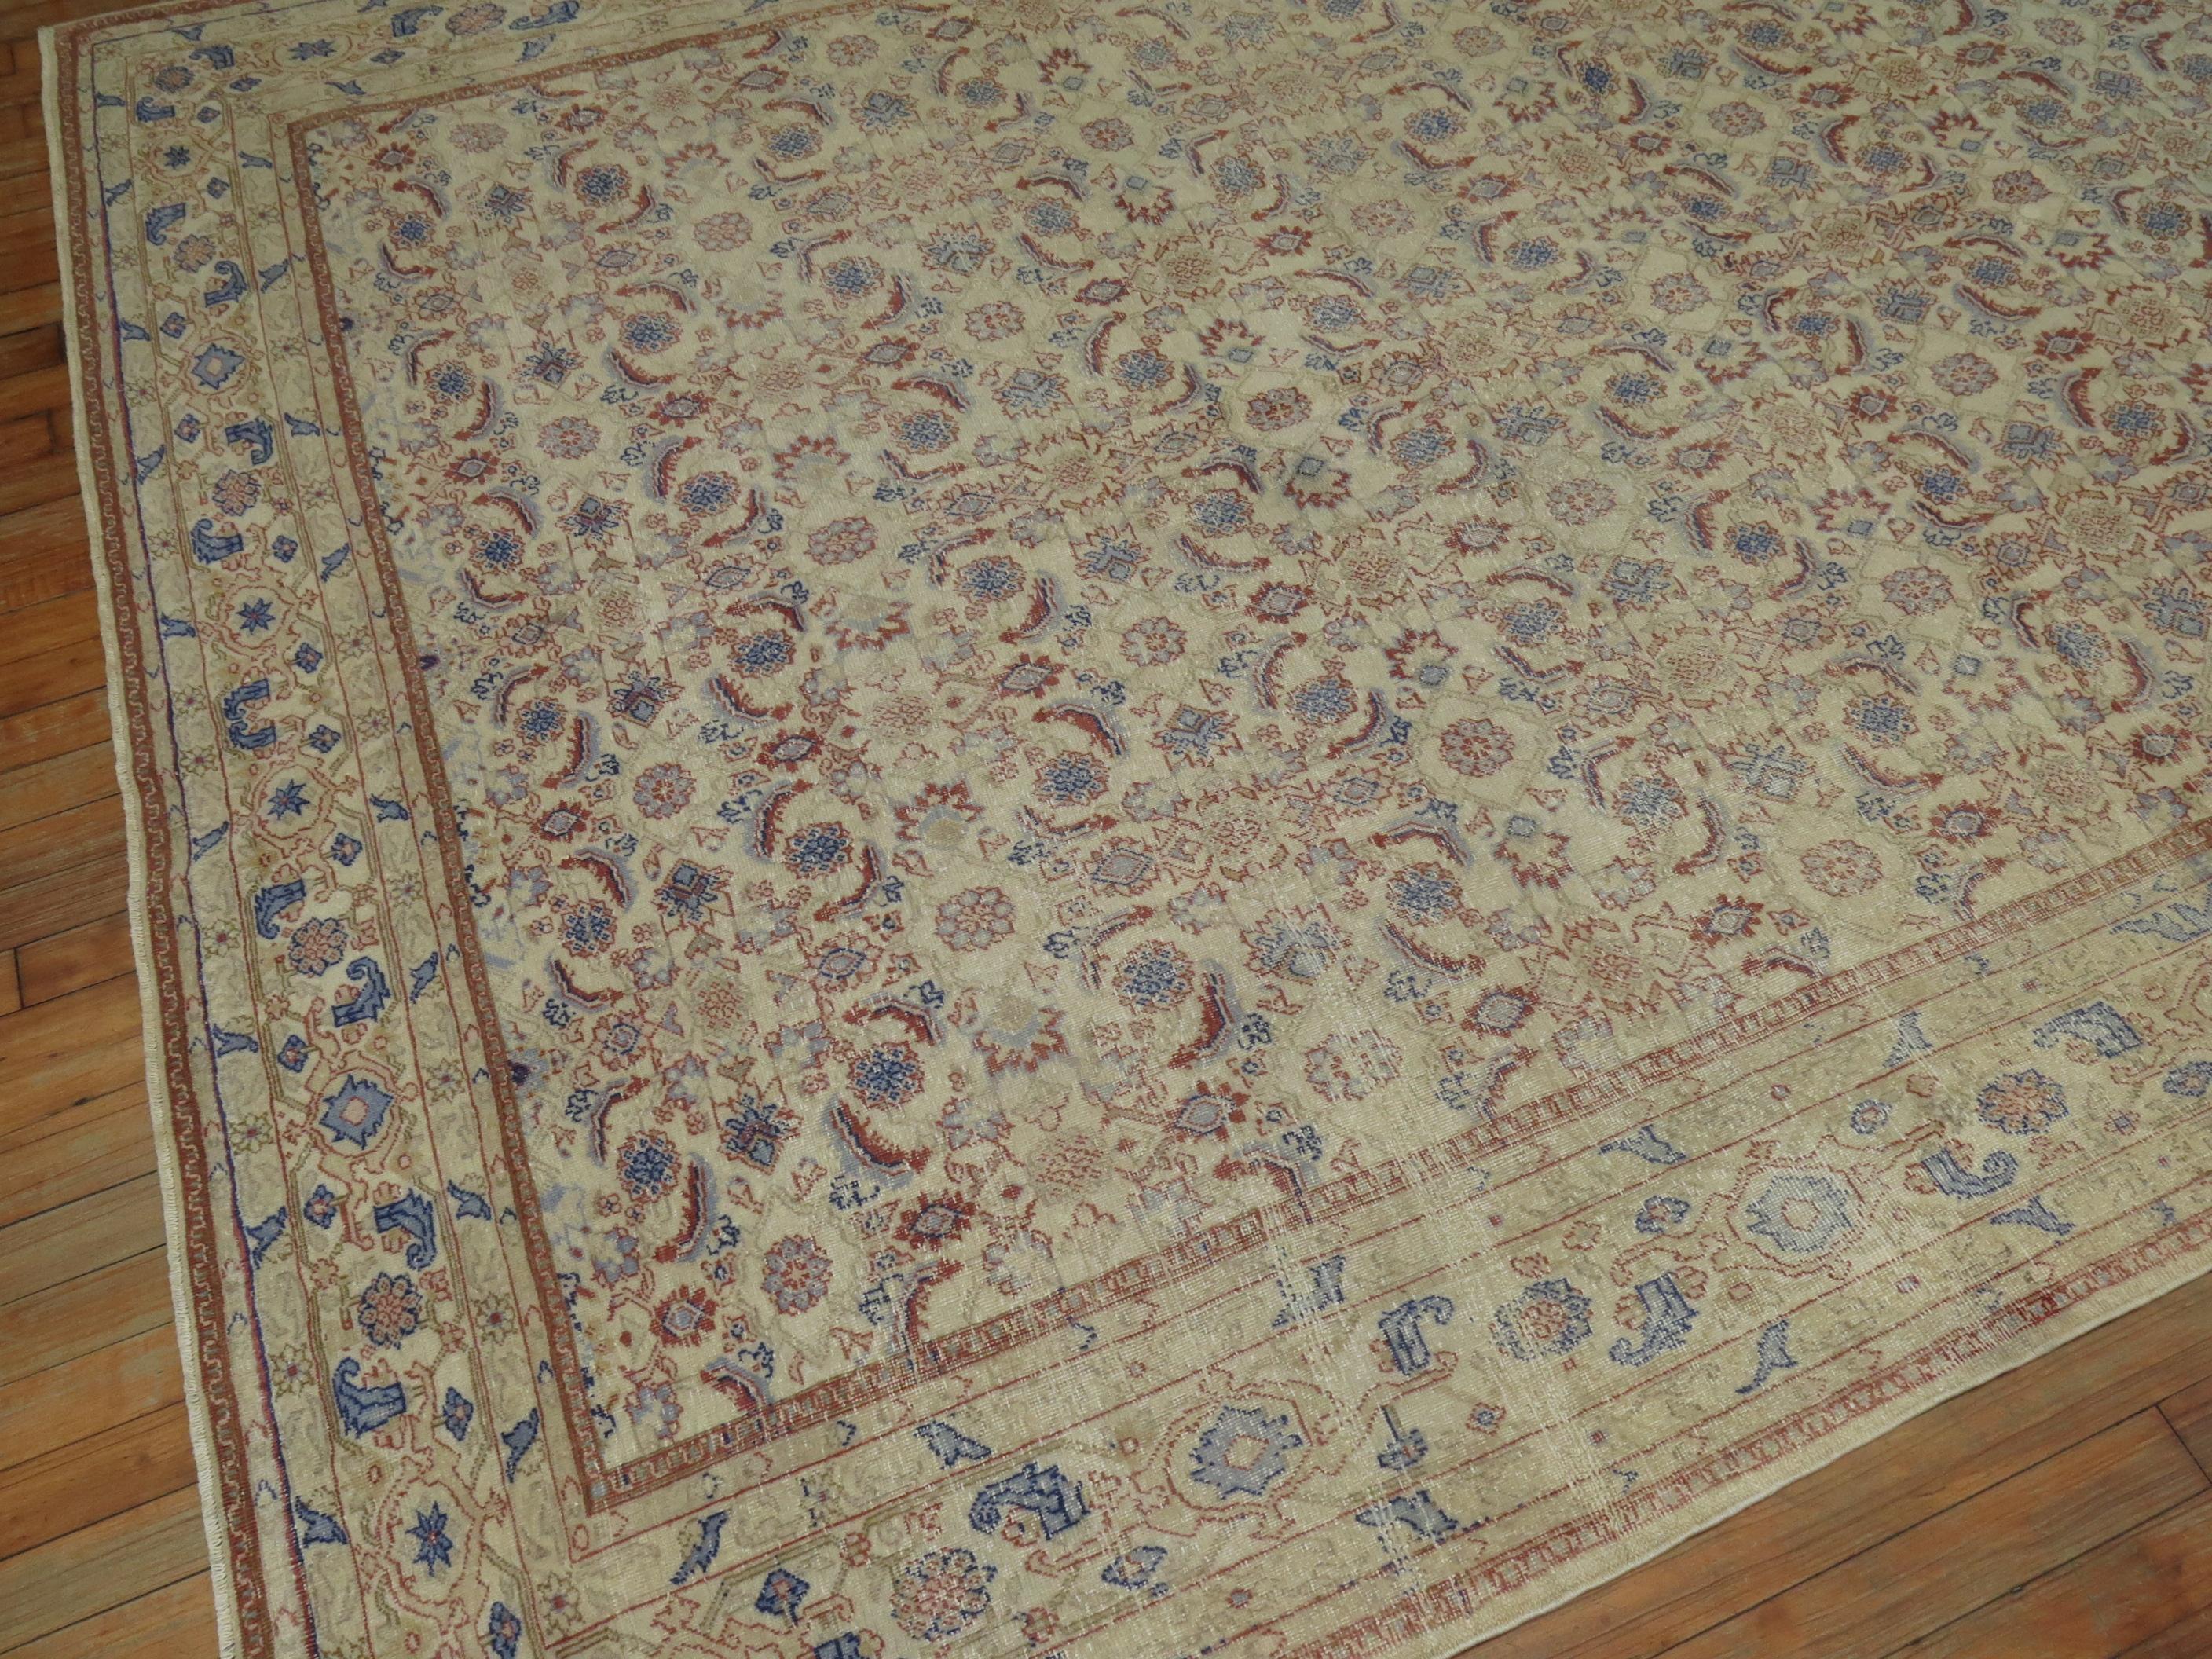 Türkischer Teppich aus der Mitte des 20. Jahrhunderts mit einem Herati-Motiv in Lehmfarbe und blauen Akzenten auf einem neutralen beigen Feld

Maße: 6'7'' x 9'1''.